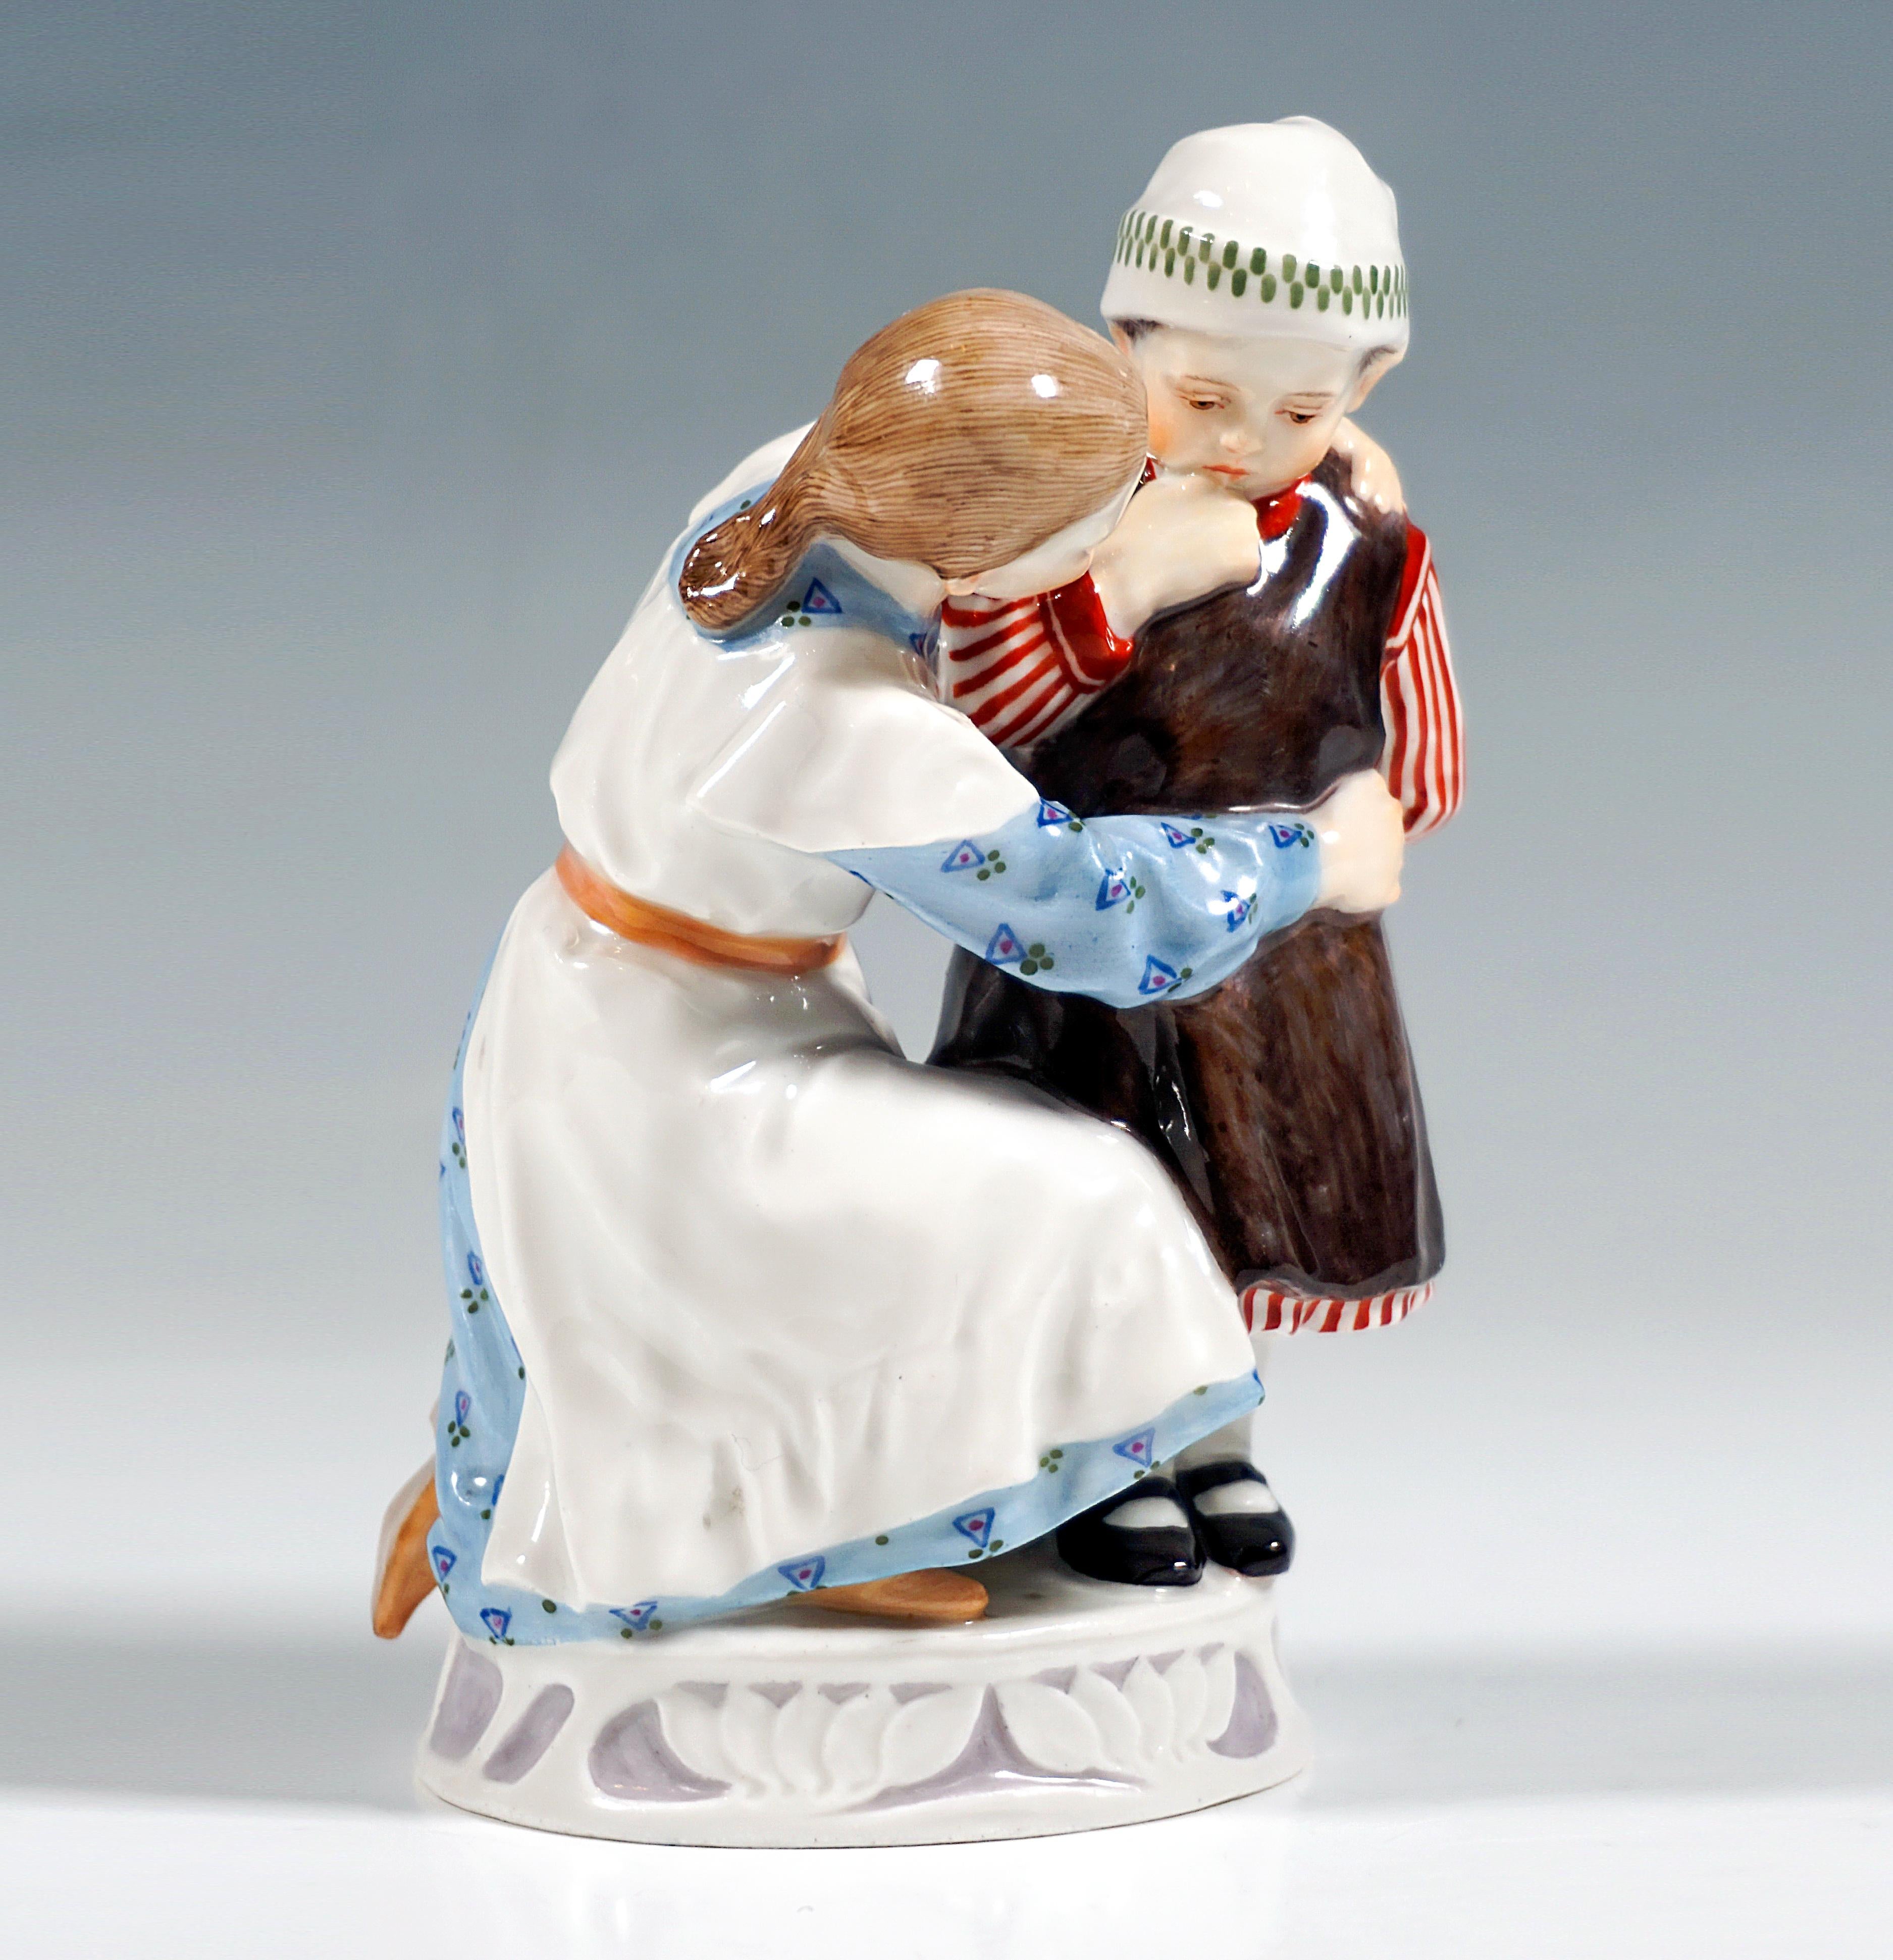 Très rare groupe de figurines en porcelaine de Meissen Art Nouveau :
Fille et enfant dans des vêtements datant d'environ 1900, la fille dans une robe à manches longues à motifs bleus avec un tablier blanc agenouillée sur le sol et un petit enfant